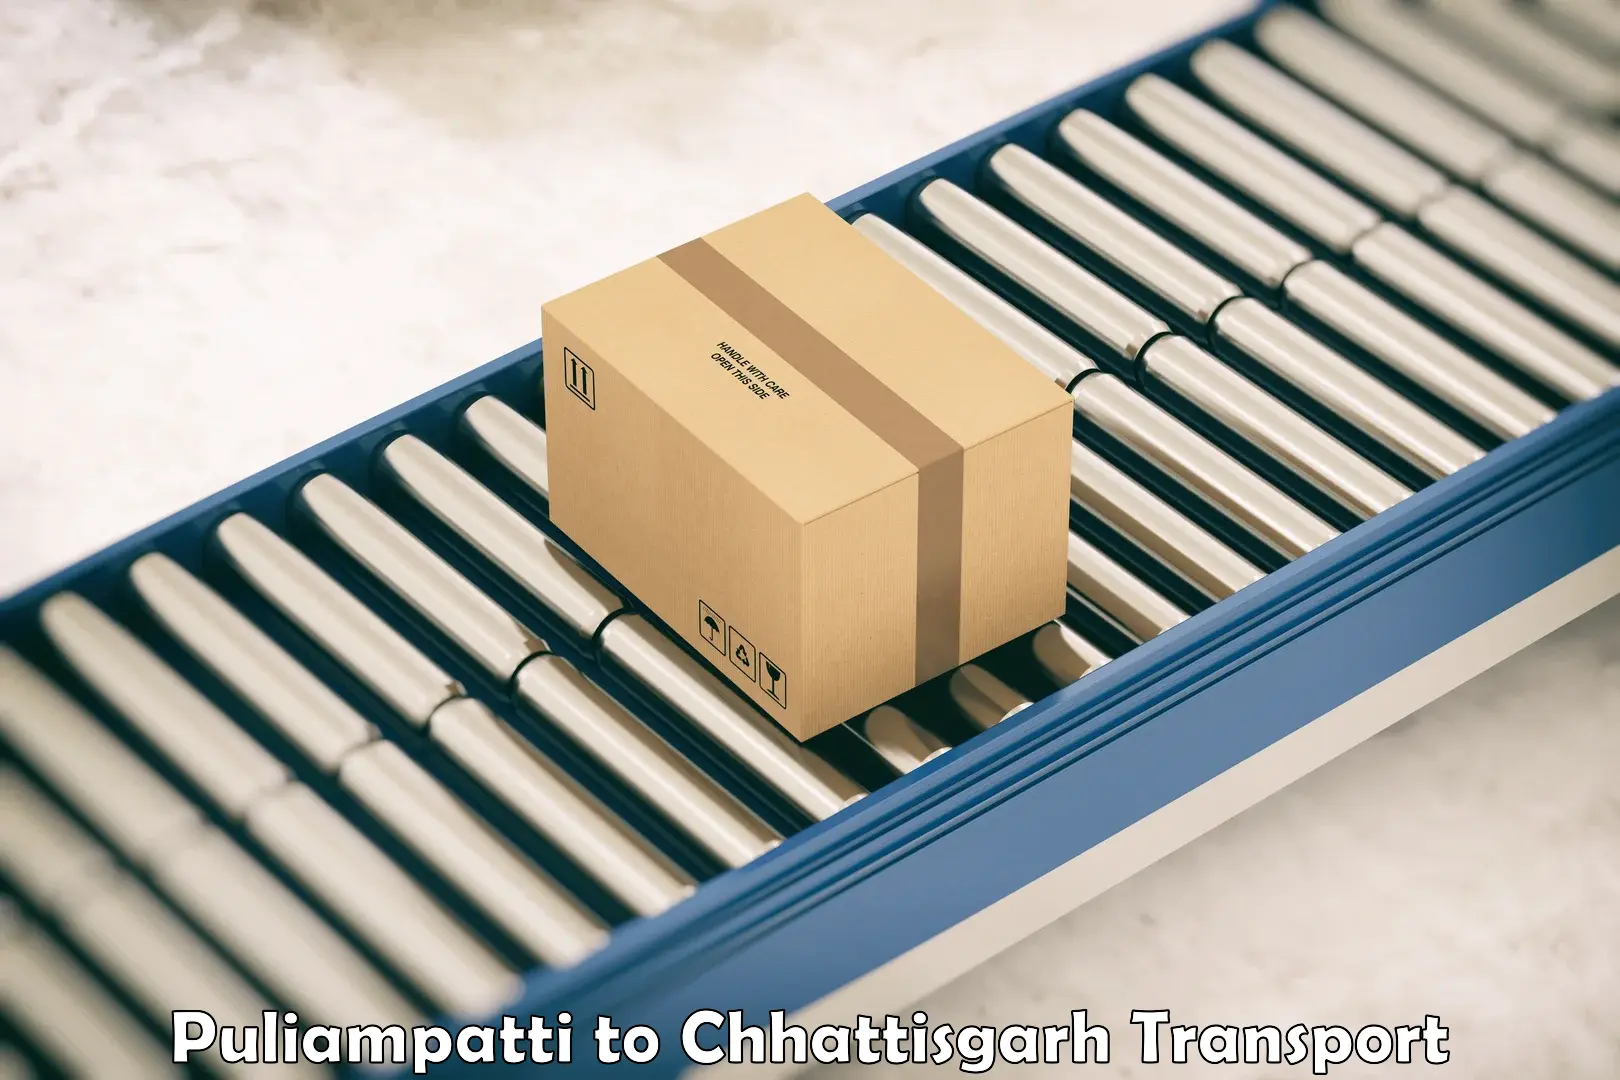 Container transport service Puliampatti to Bijapur Chhattisgarh